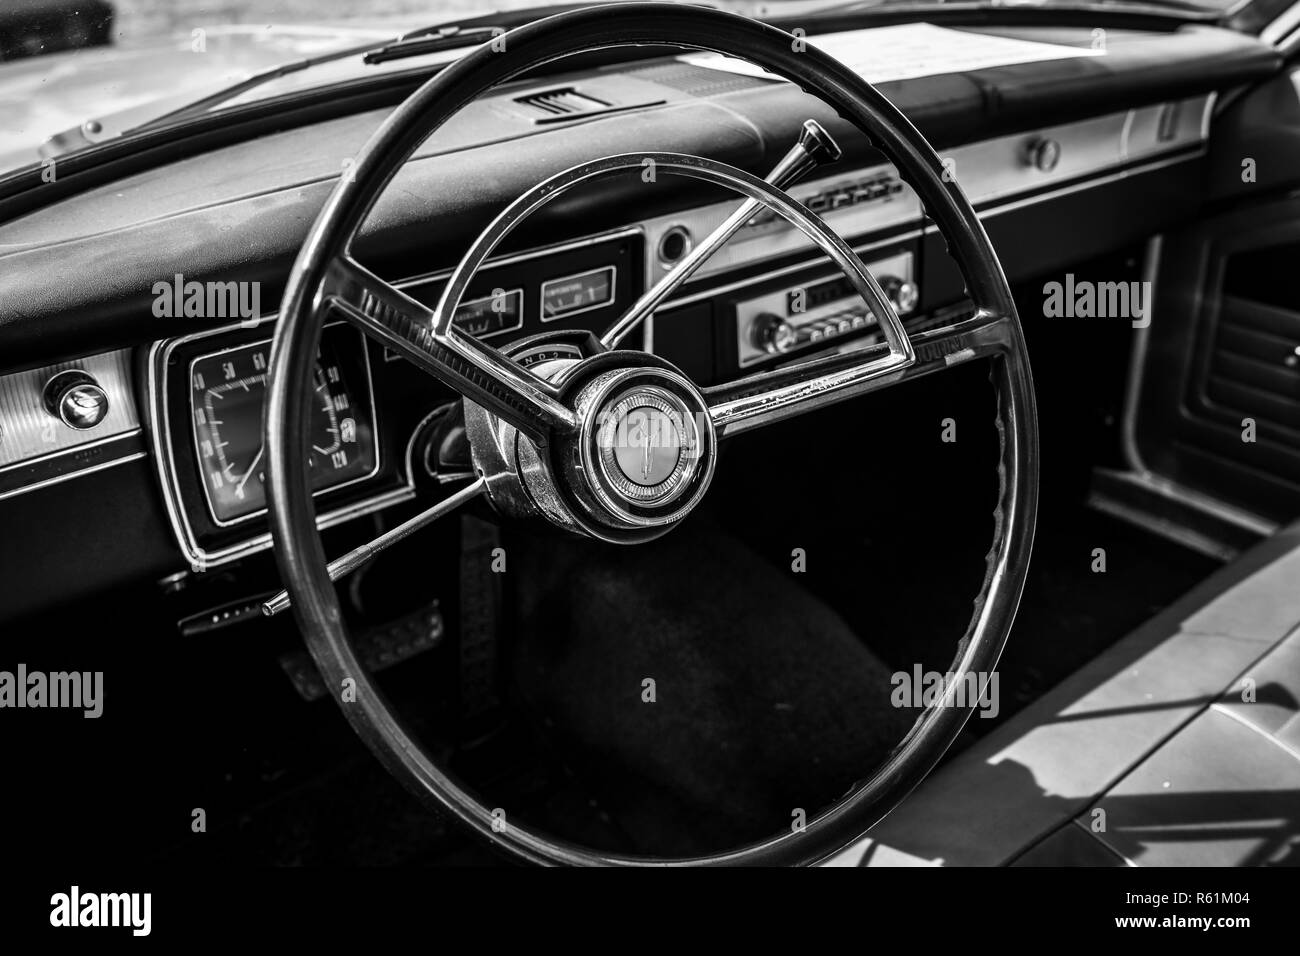 PAAREN IM GLIEN, Germania - 19 Maggio 2018: interni di una vettura compatta Plymouth Valiant 200, 1966. In bianco e nero. Die Oldtimer Show 2018. Foto Stock